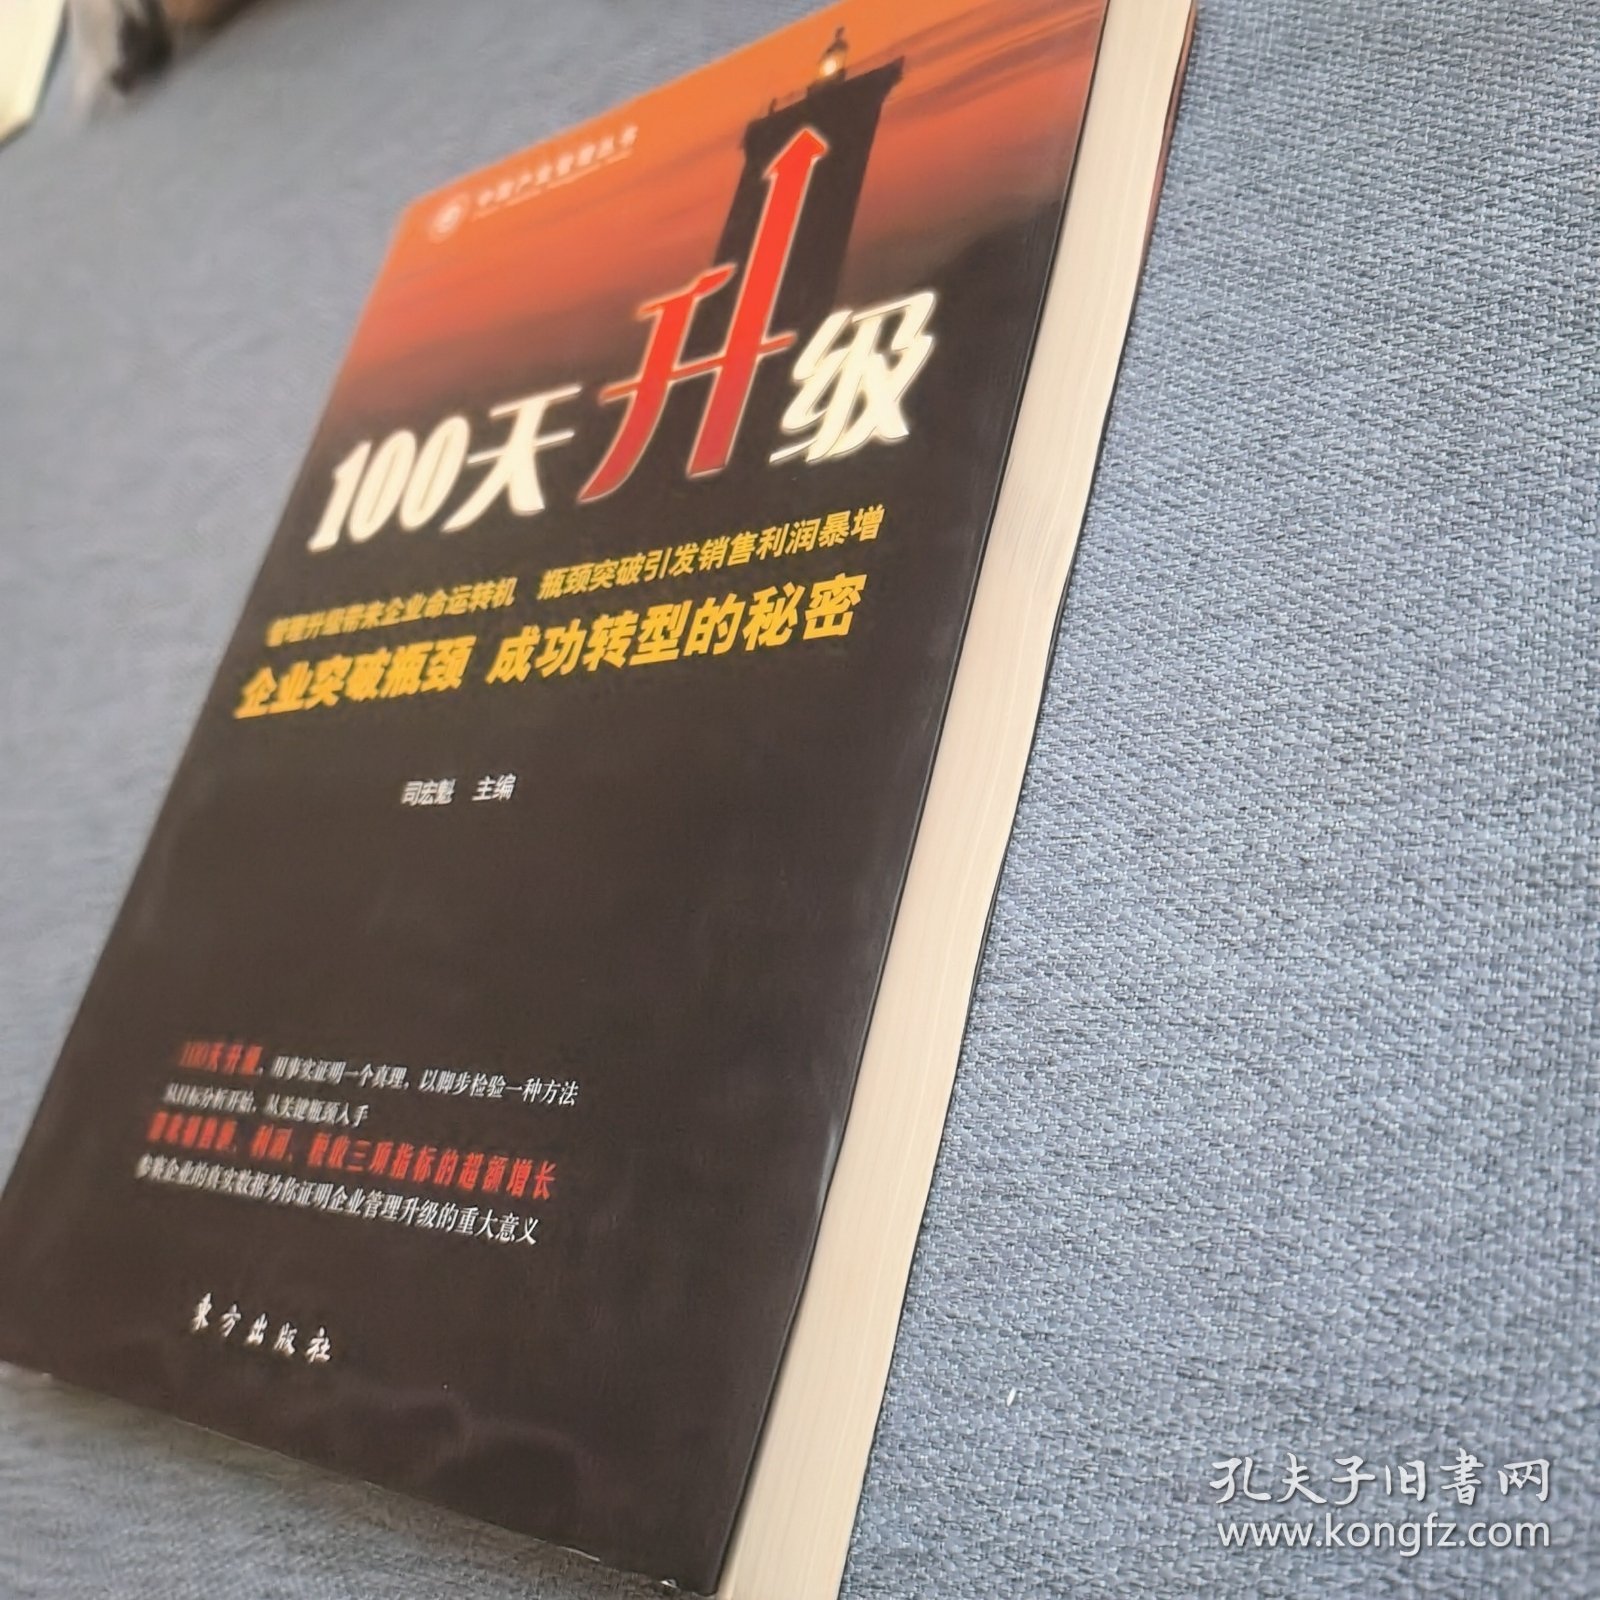 中国产业管理丛书：100天升级